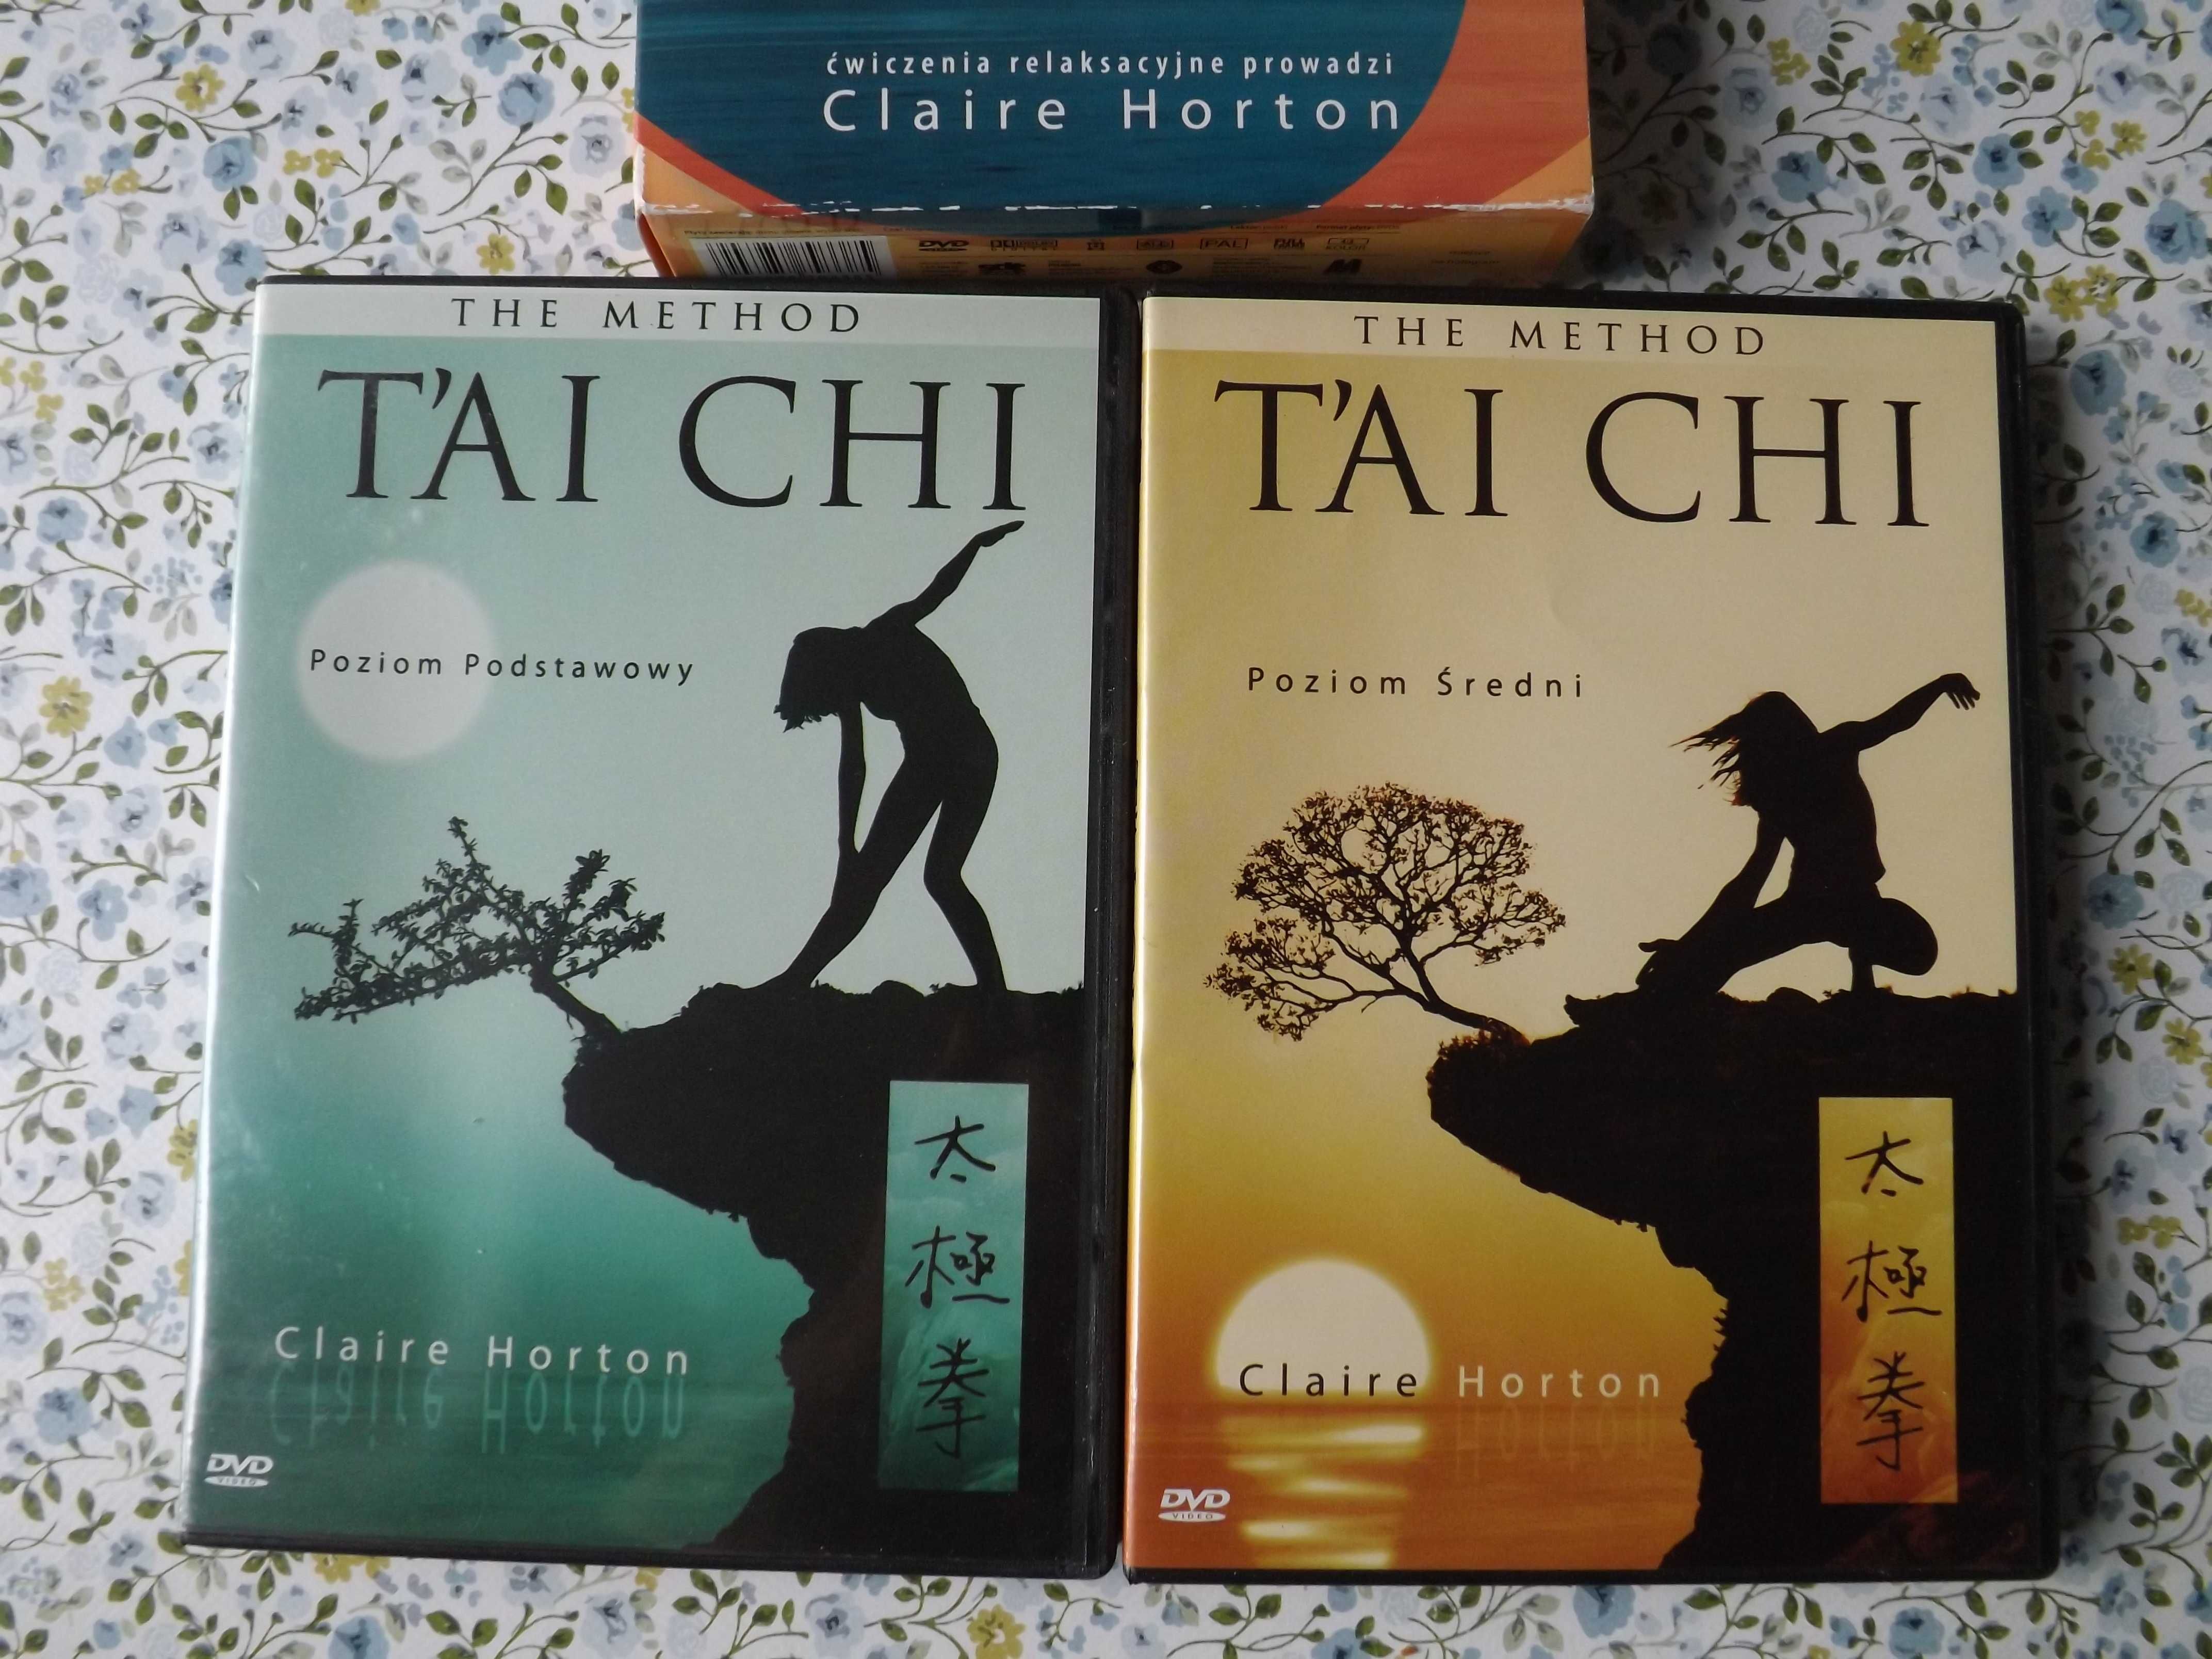 Tai Chi  ćwiczenia relaksacyjne  podstawowe i średnie 2 dvd